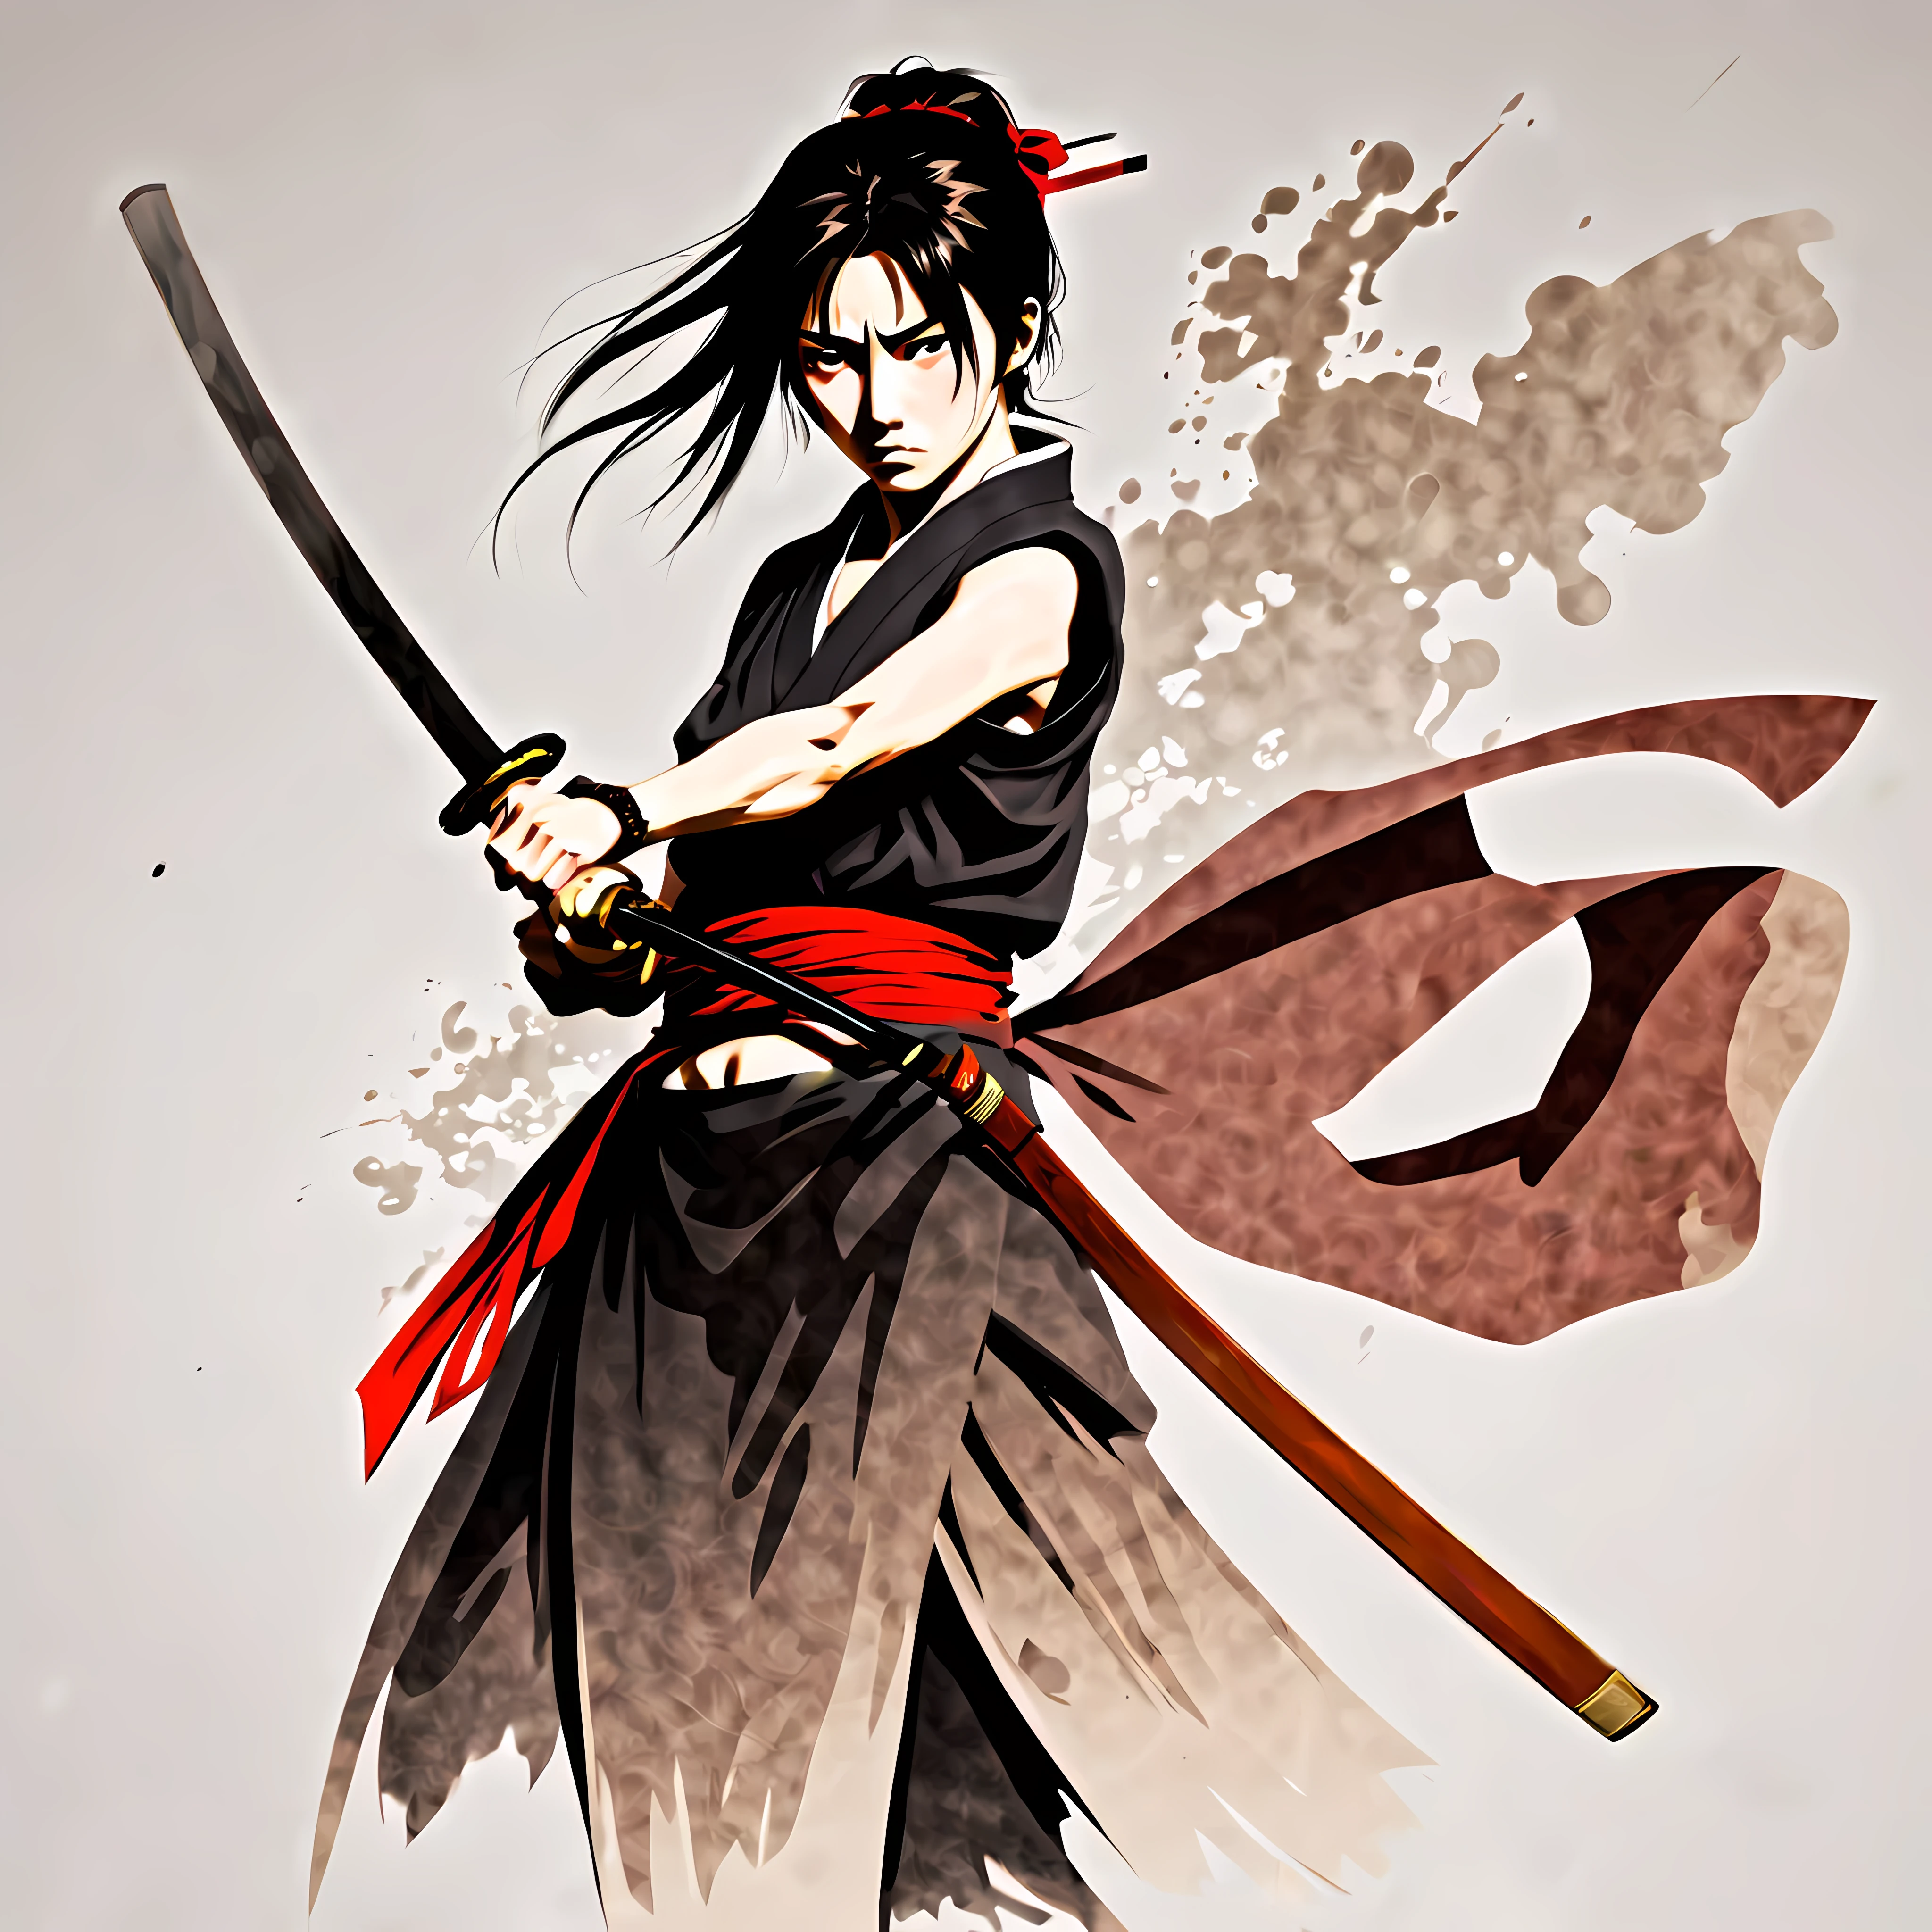 ((อนิเมะสไตล์ Rurouni Kenshin:1.3). ((รุนแรง_การแสดงออก:1.2), ((ซามูไรหญิง):1.2), ((นาฬิกาทราย_รูป):1.1). ((ท่าทางการต่อสู้):1.1), | The รูป is depicted with smooth lines, แสดงอารมณ์และท่าทางผ่านความคมชัดของความหนาแน่นของหมึก. พื้นหลังมีความเรียบง่าย, เน้นแสง, เงา, และการรับรู้เชิงพื้นที่.